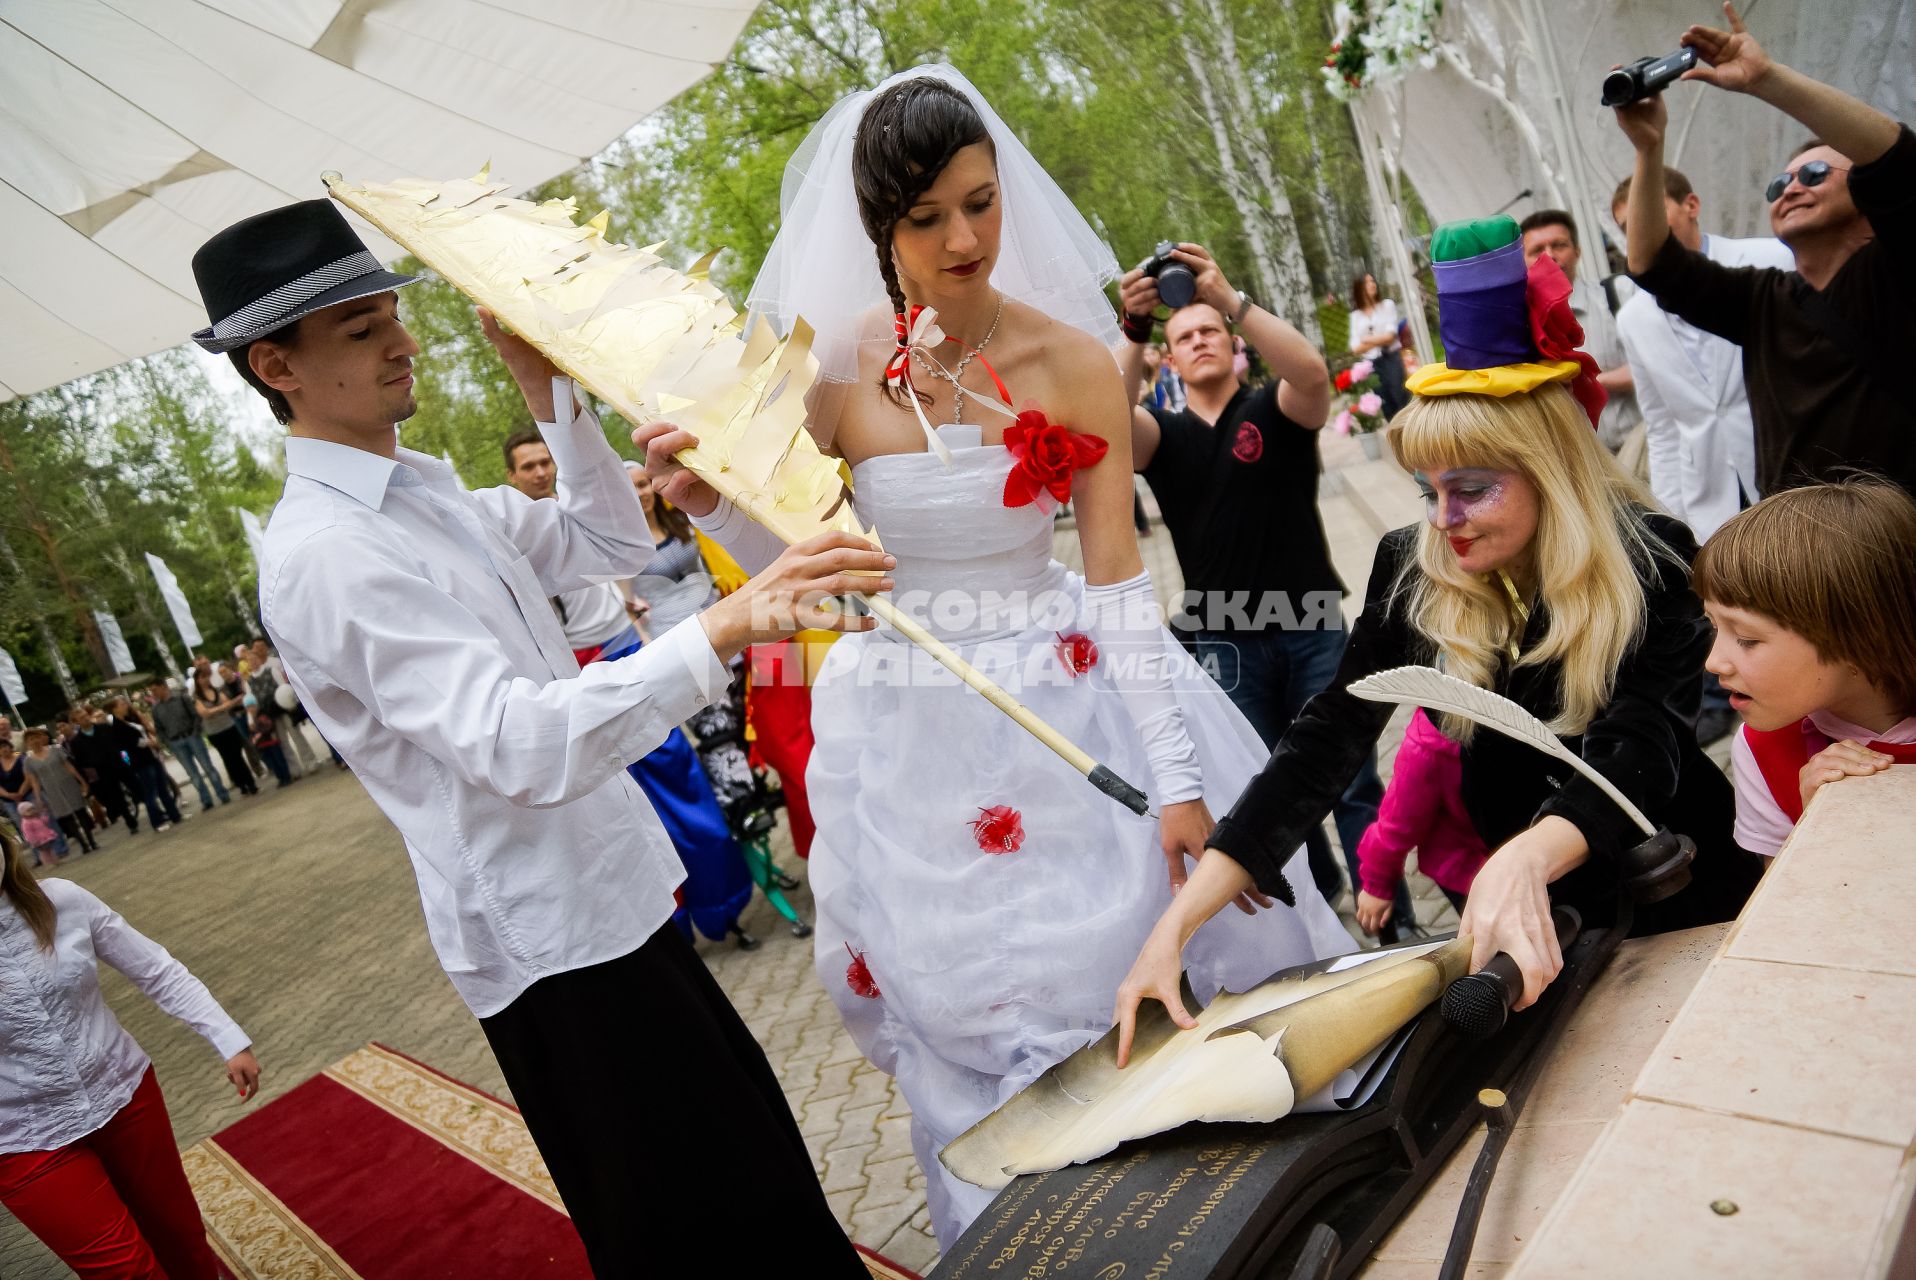 Молодожены Екатерина и Максим Березины из Екатеринбурга на церемонии бракосочетания, подписывают документы.